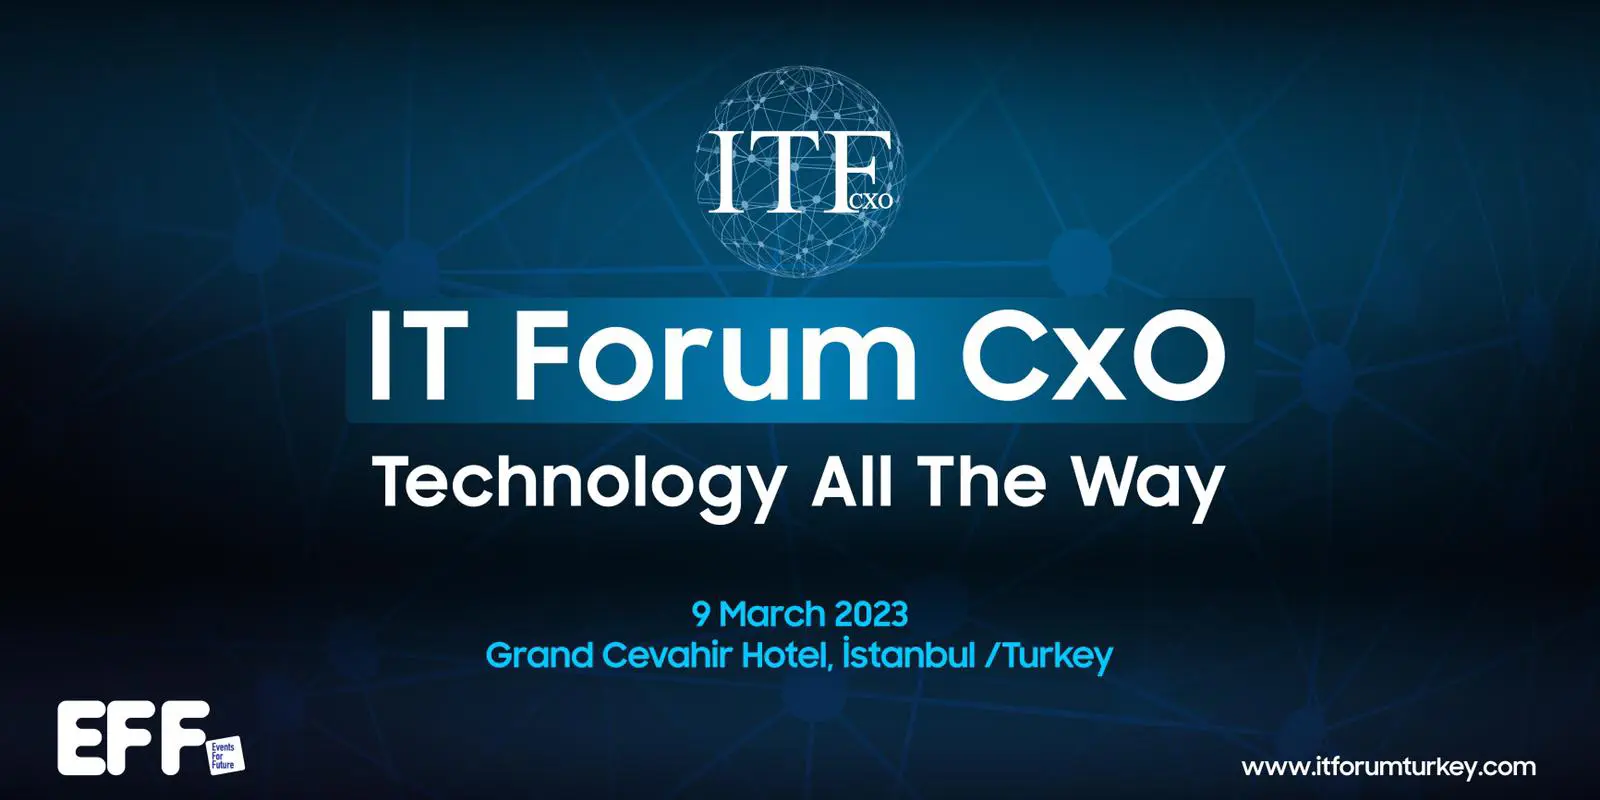 IT Forum CxO 2023